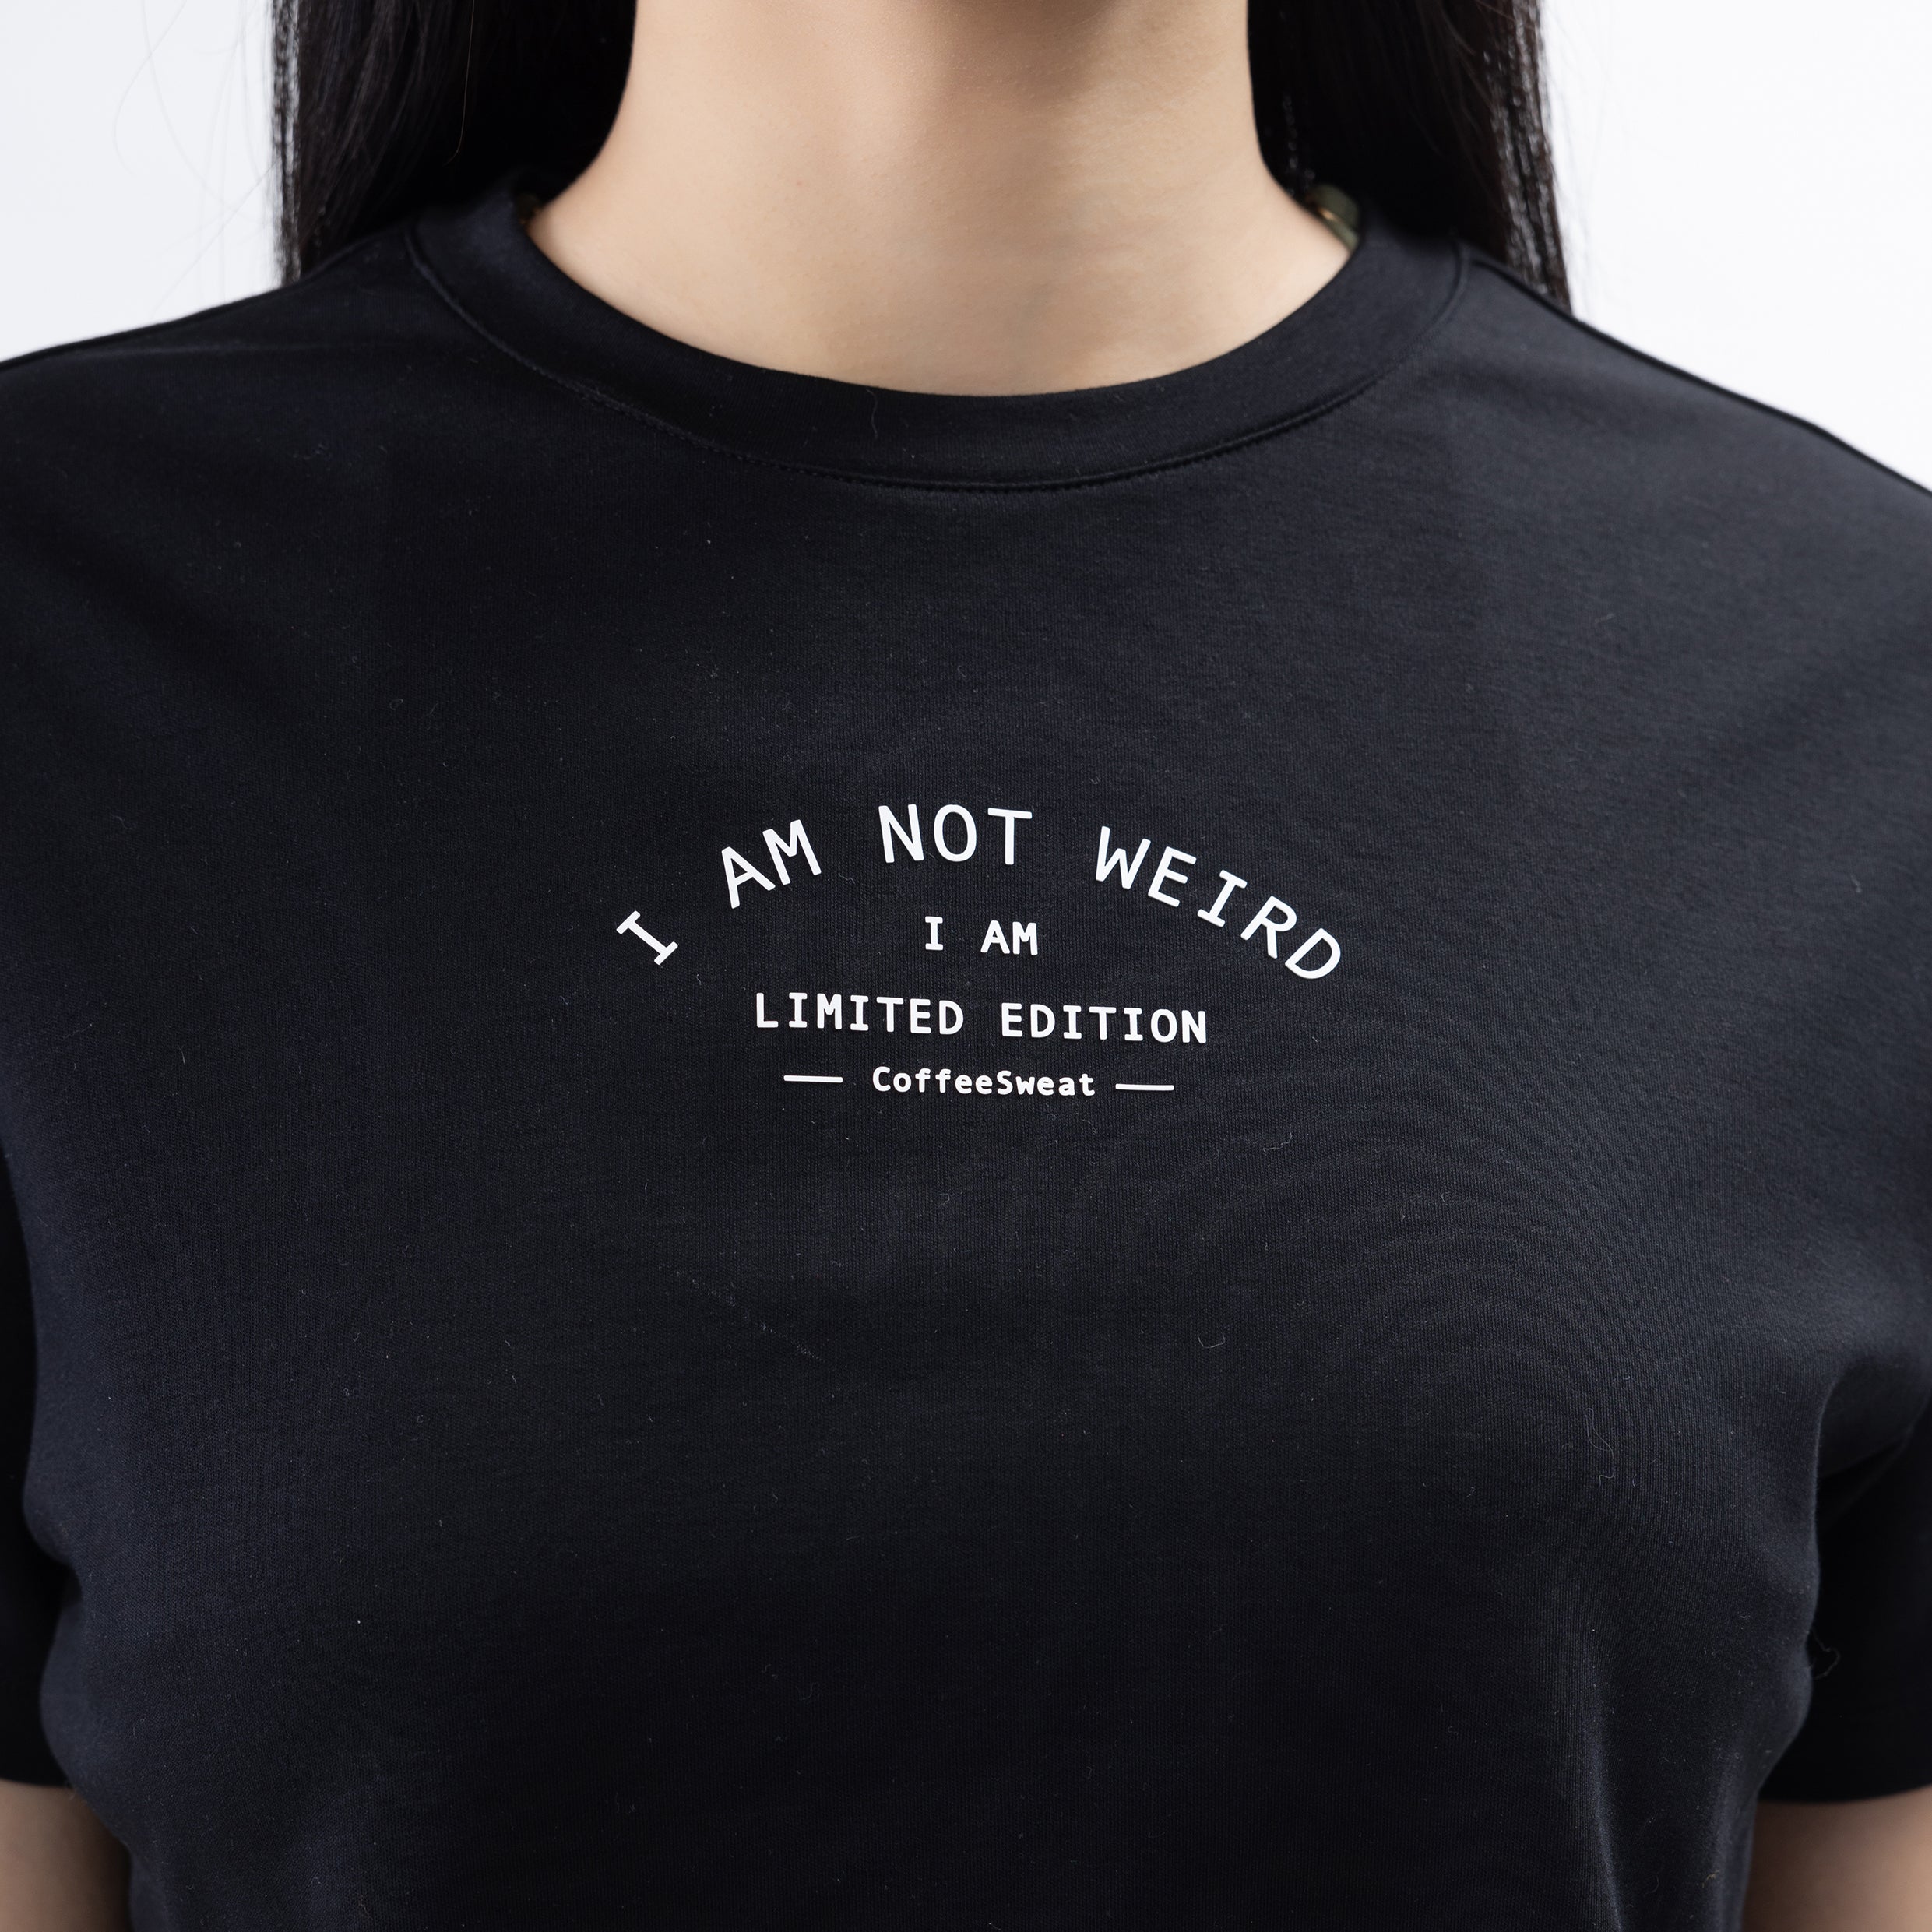 Not Weird T-Shirt